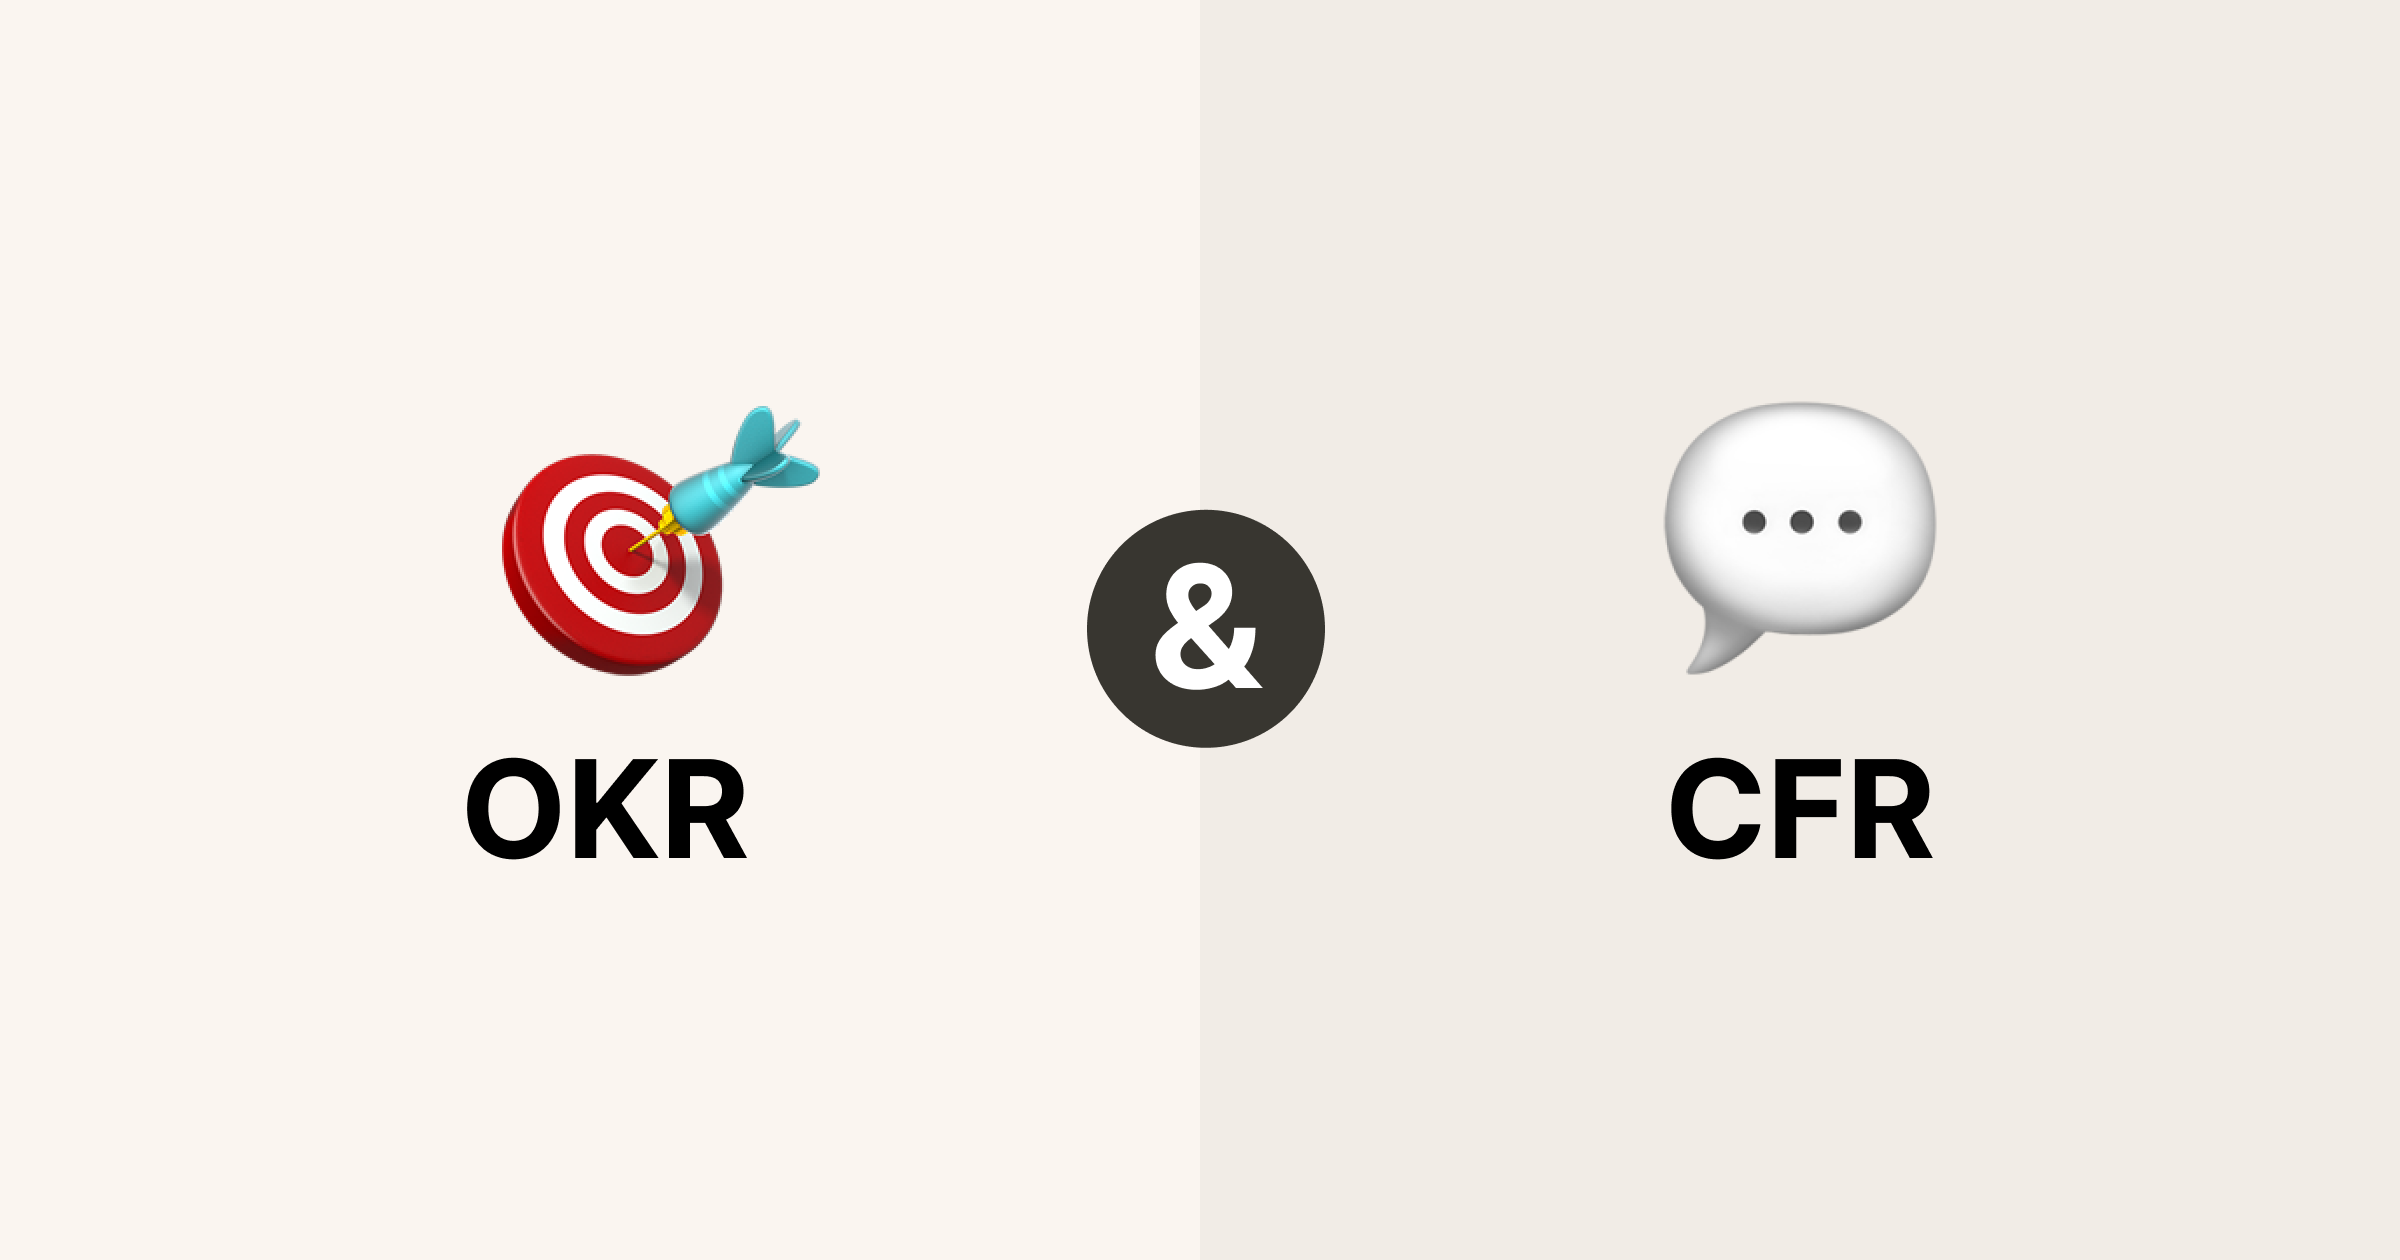 OKR and CFR